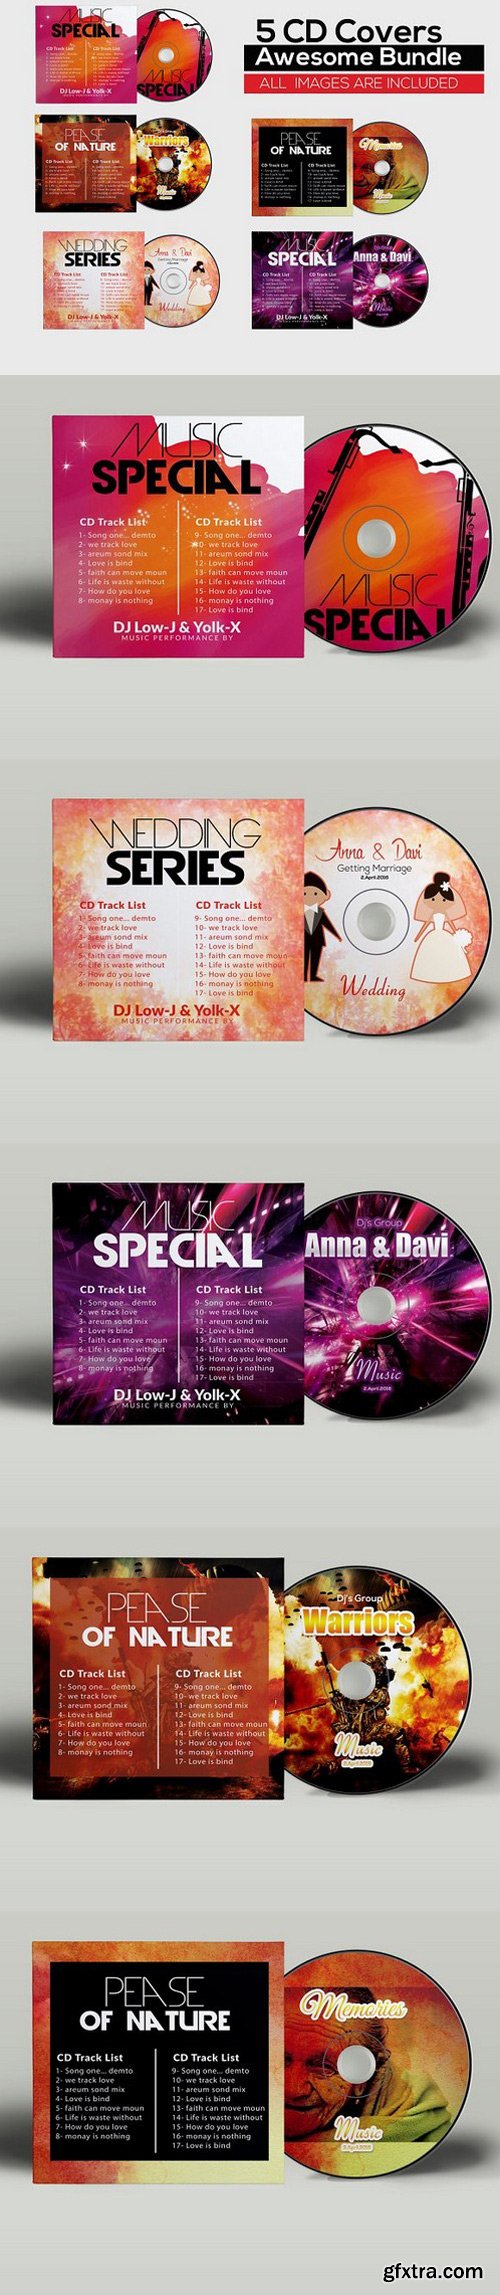 CM - 5 CD Cover Psd Bundle 783078